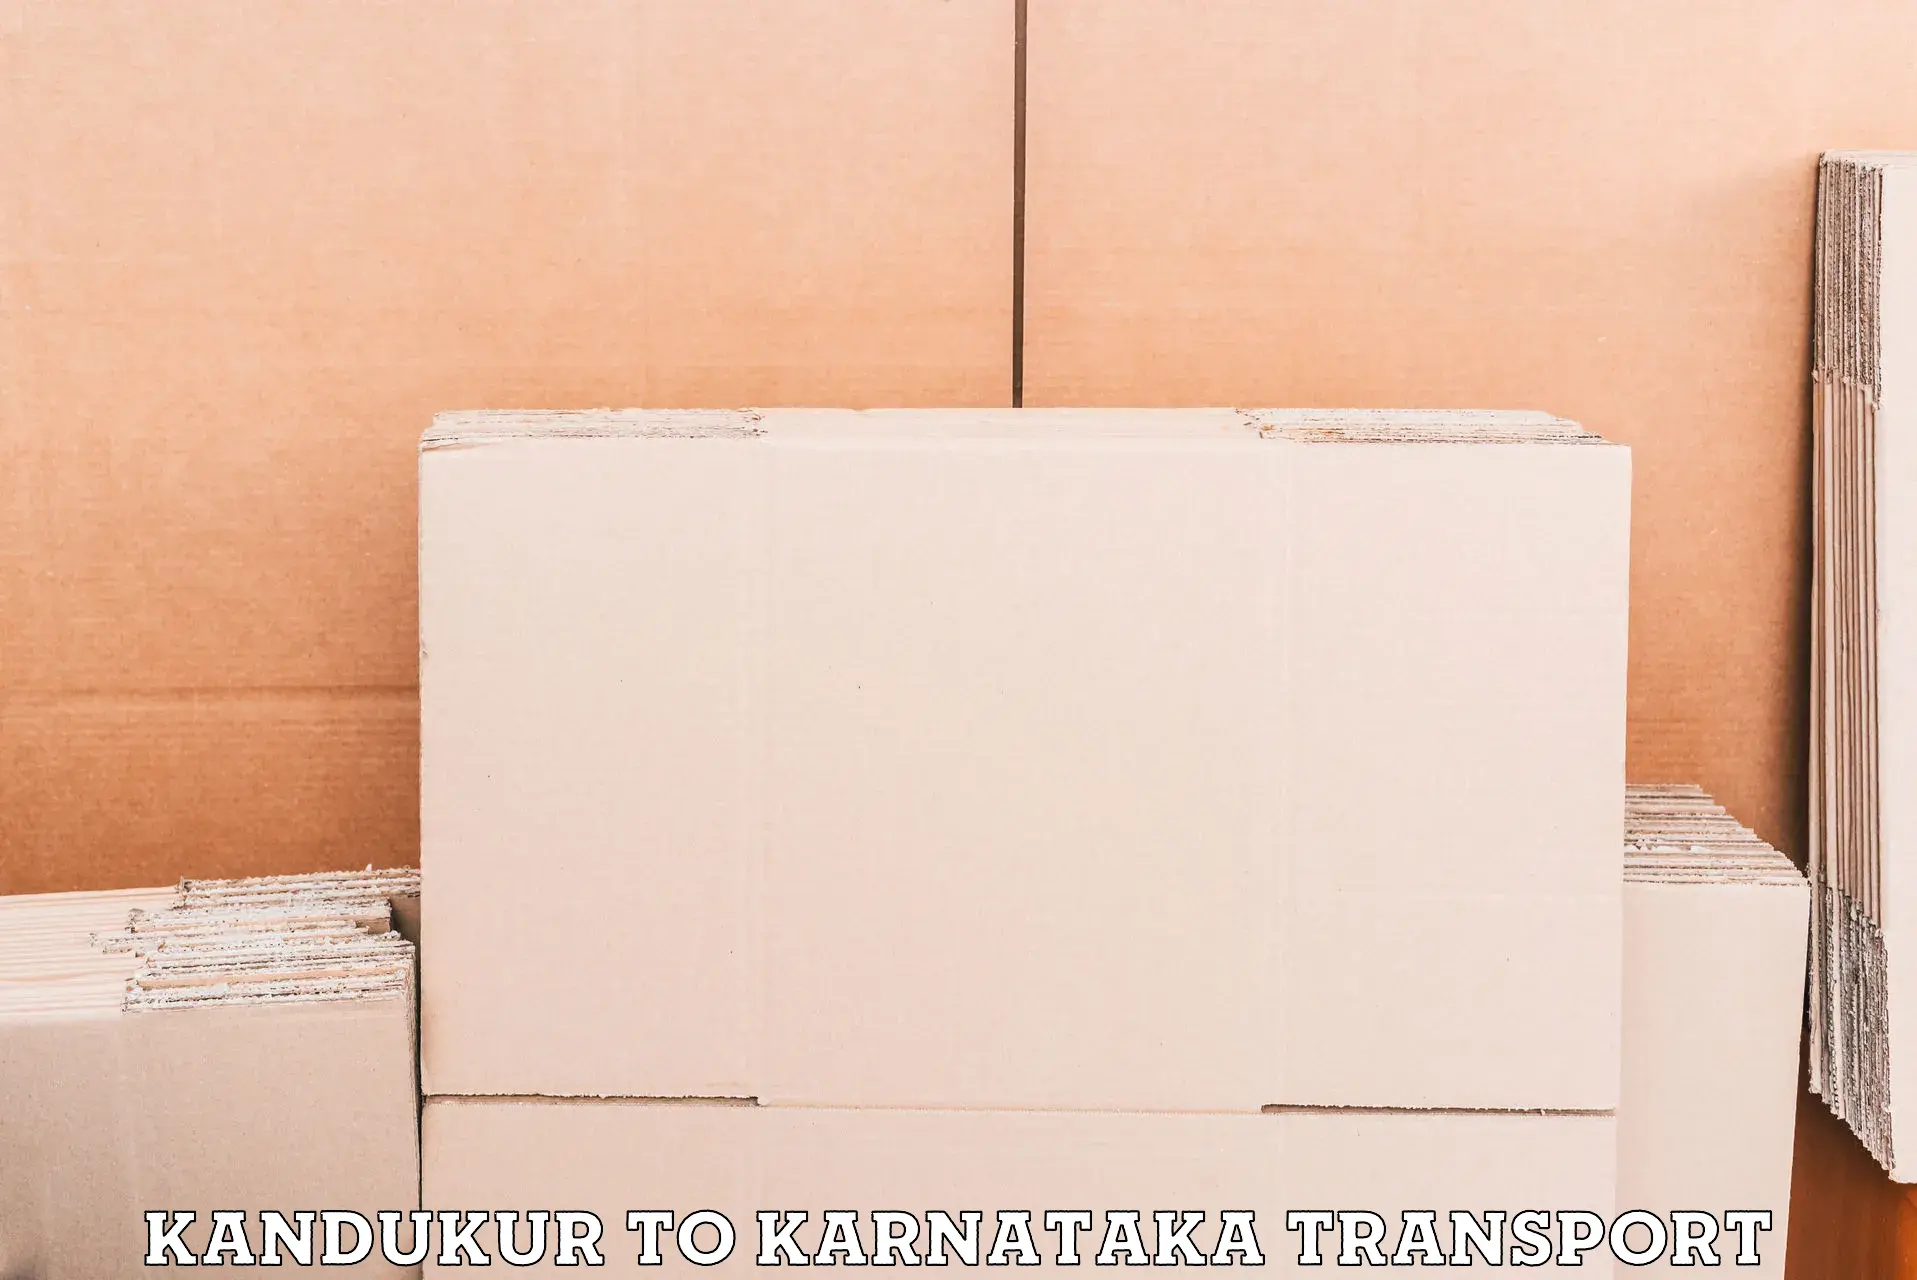 Nearest transport service Kandukur to Uttara Kannada